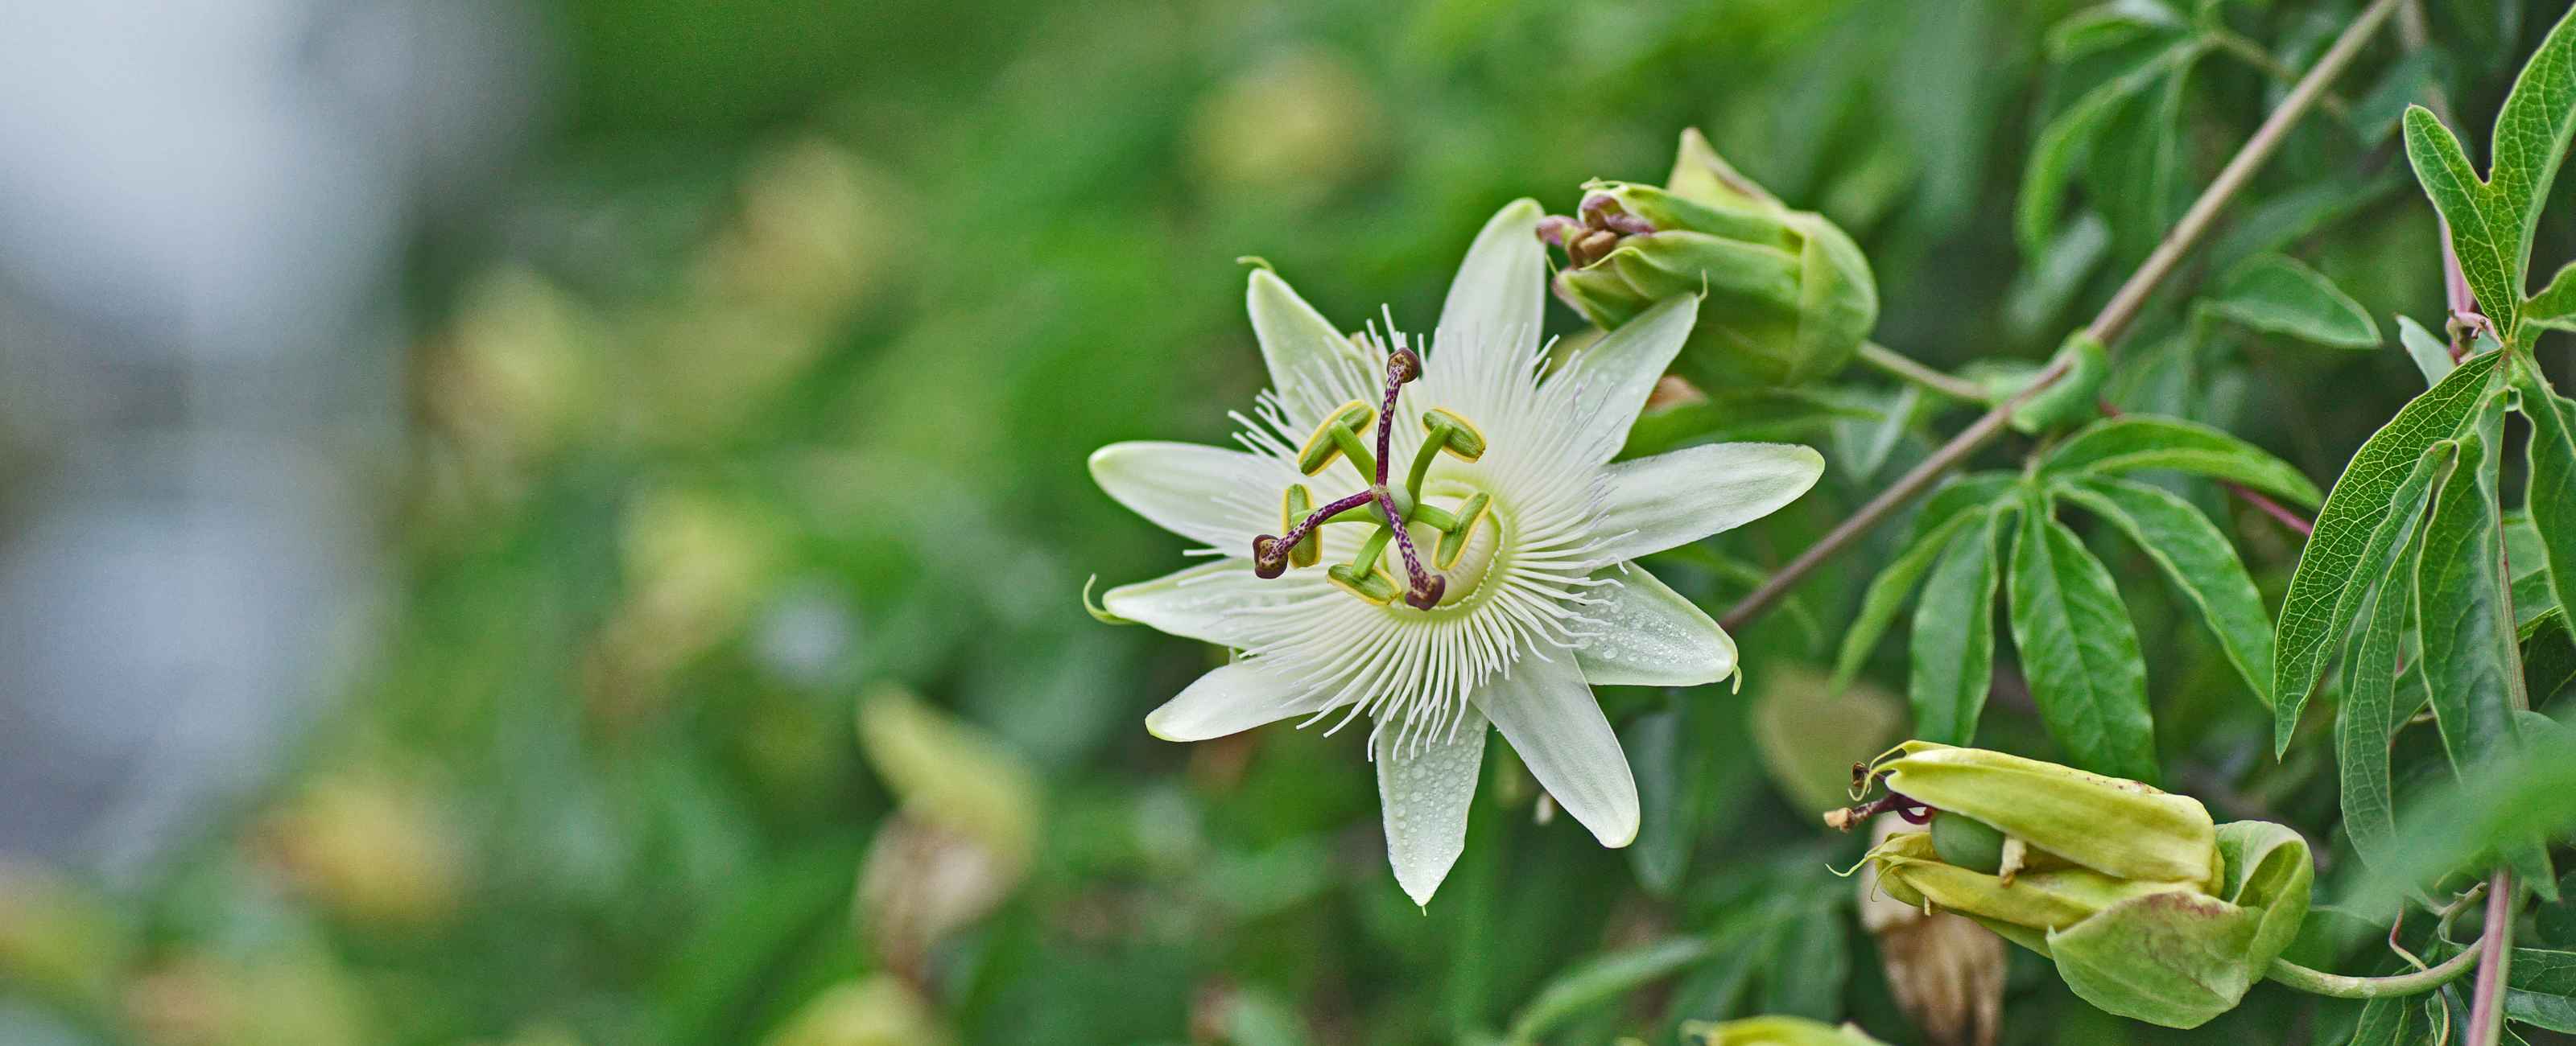 Passiflore (Passiflora incarnata) : propriétés, bienfaits de cette plante  en phytothérapie - Doctissimo